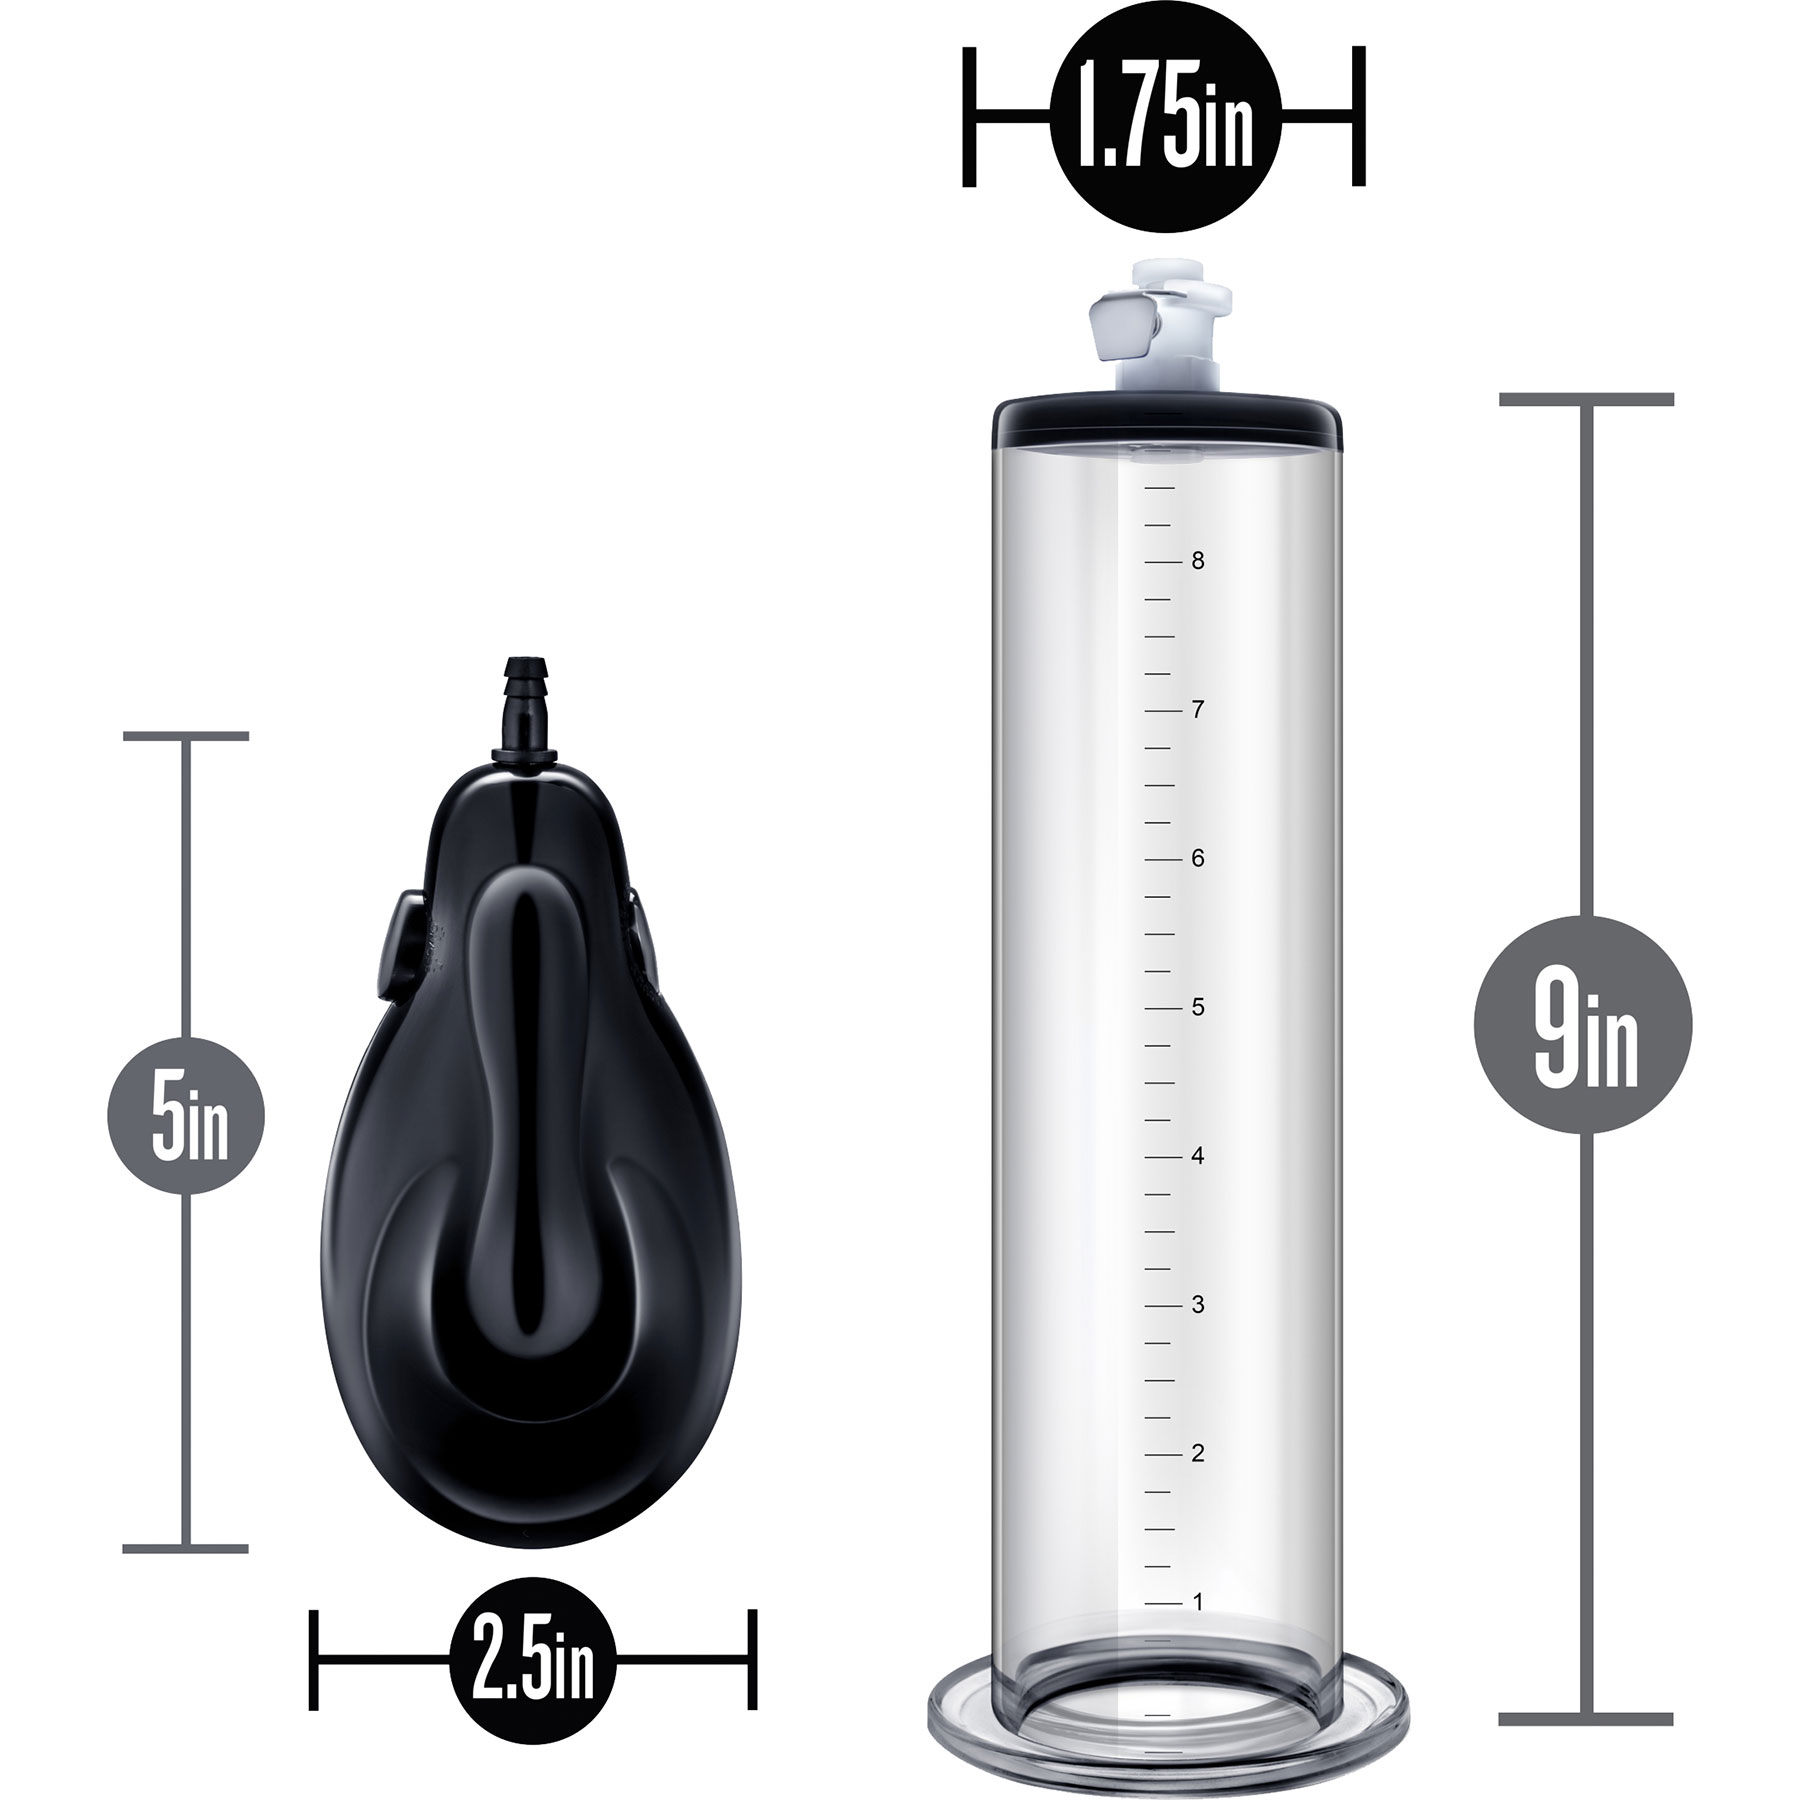 Performance VX9 Male Enhancement Penis Pump - Measurements